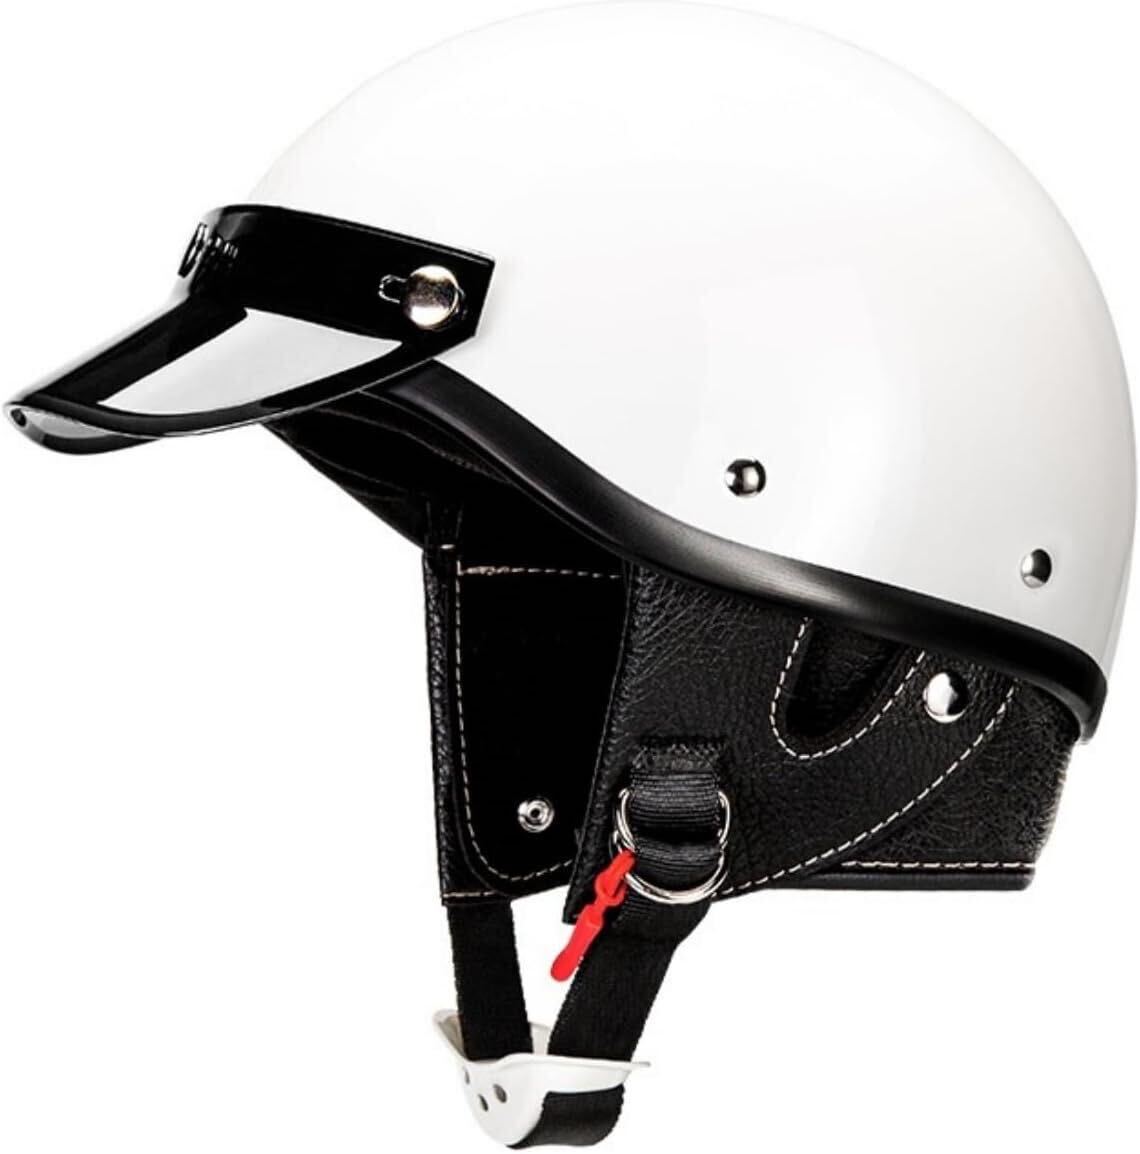  половина колпак шлем половина колпак шлем для мужчин и женщин ходить на работу для шлем скейтборд для шлем с козырьком XXL 63-64cm